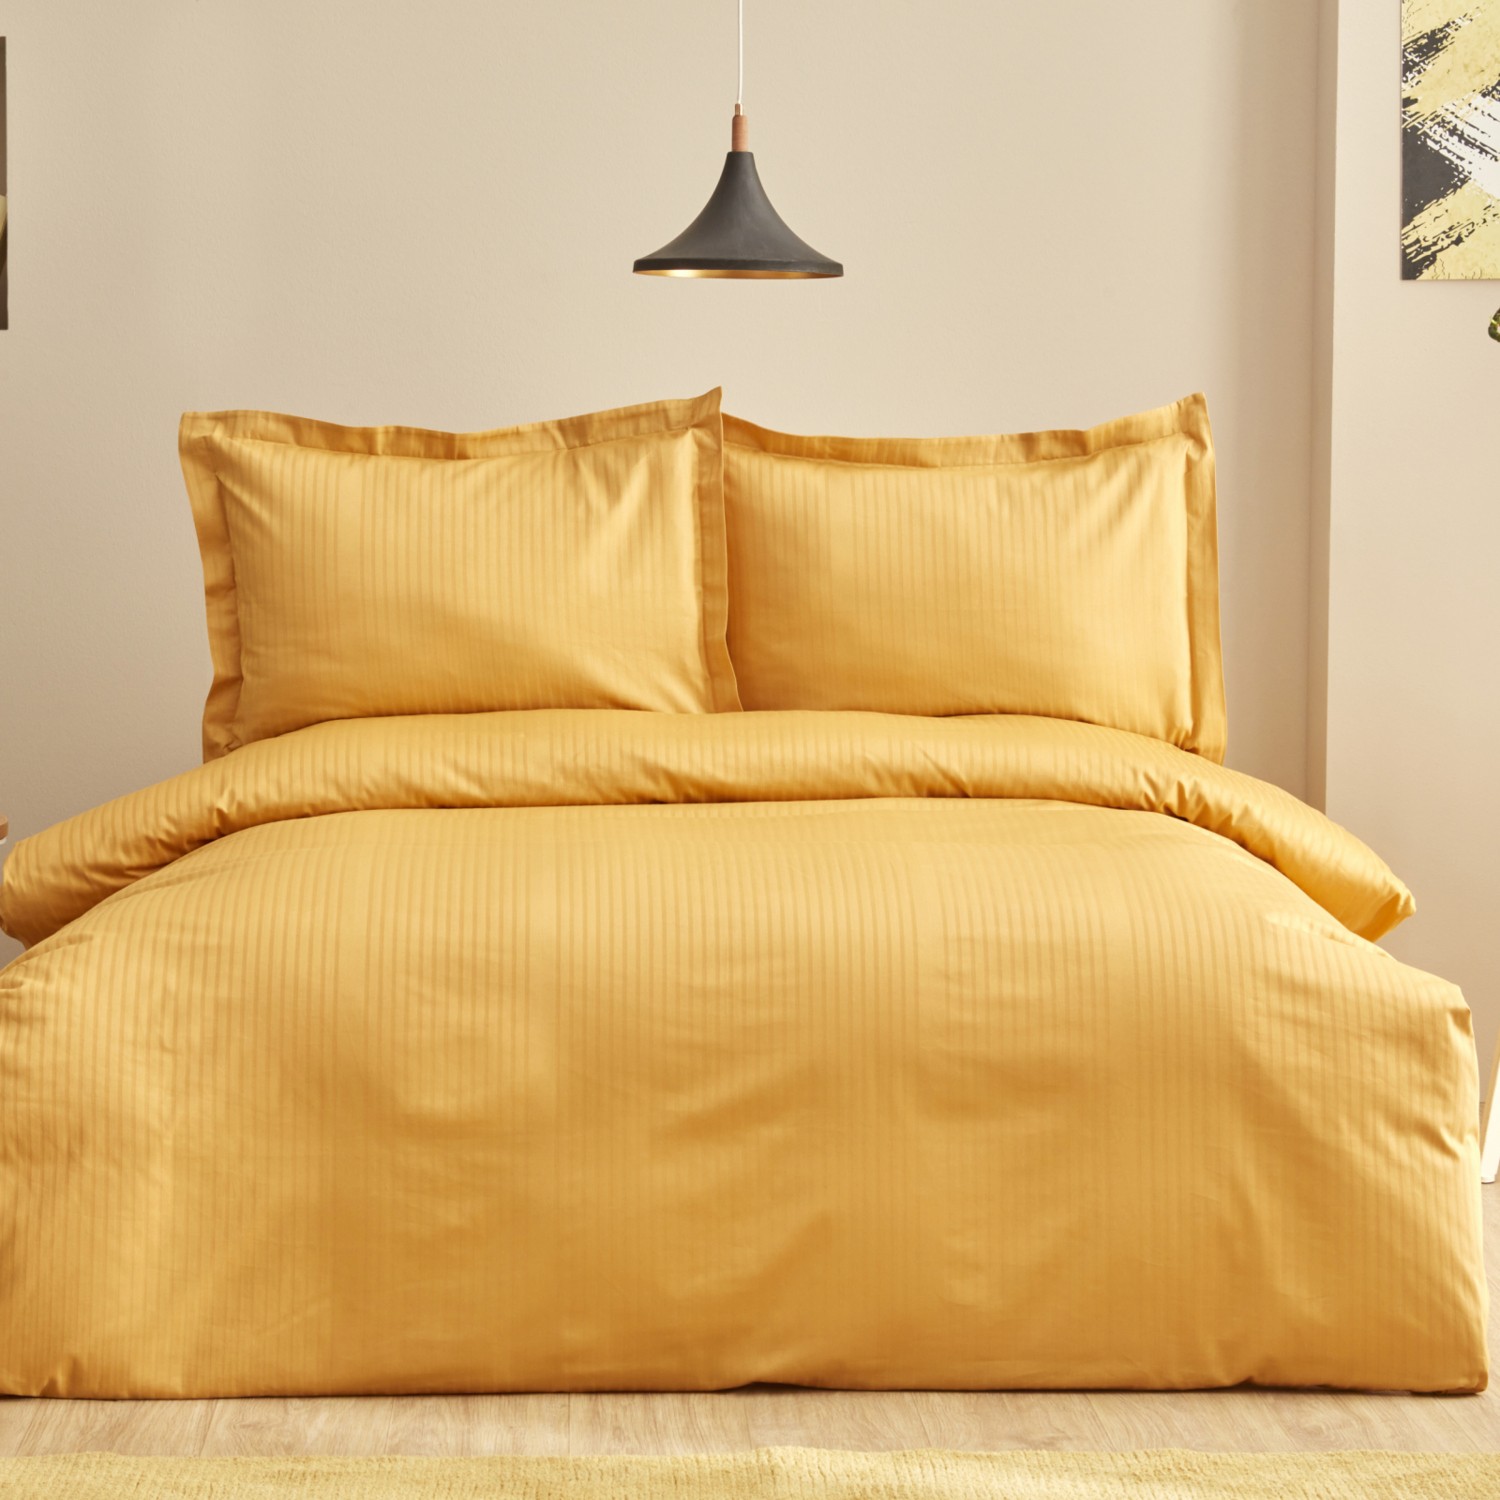 Karaca Home Uniq Комплект постельного белья из 100% хлопка с двойным атласом горчичного цвета